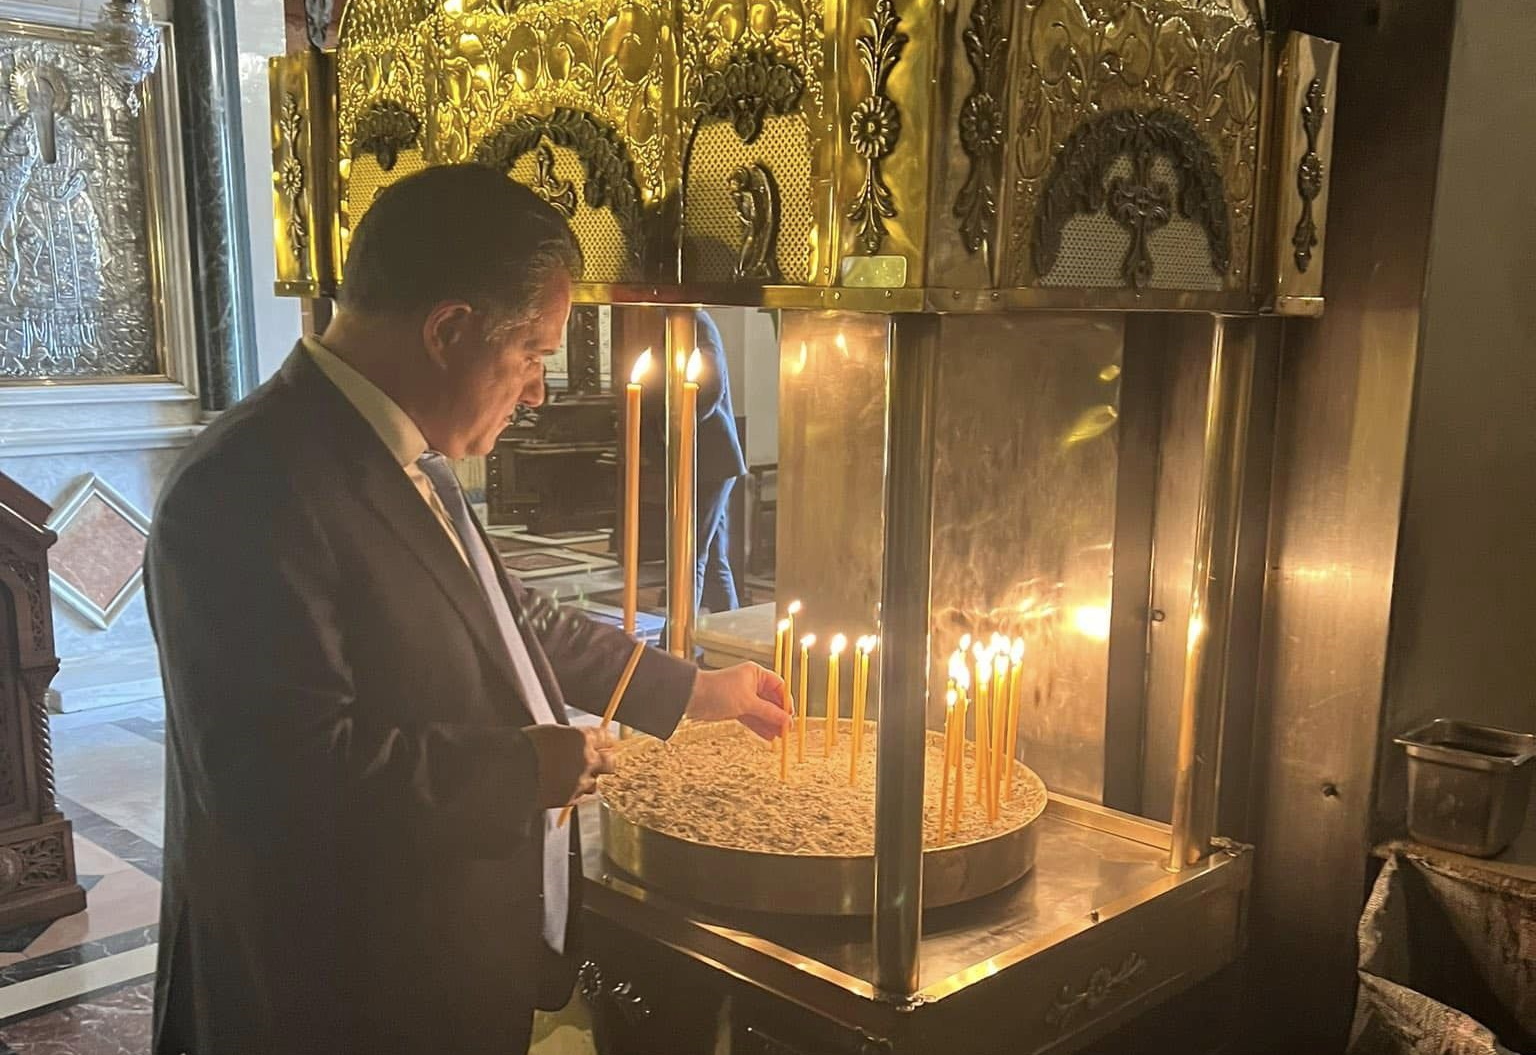 Άδωνις Γεωργιάδης: Άναψε κερί σε εκκλησία μετά το τροχαίο – Η ανάρτησή του